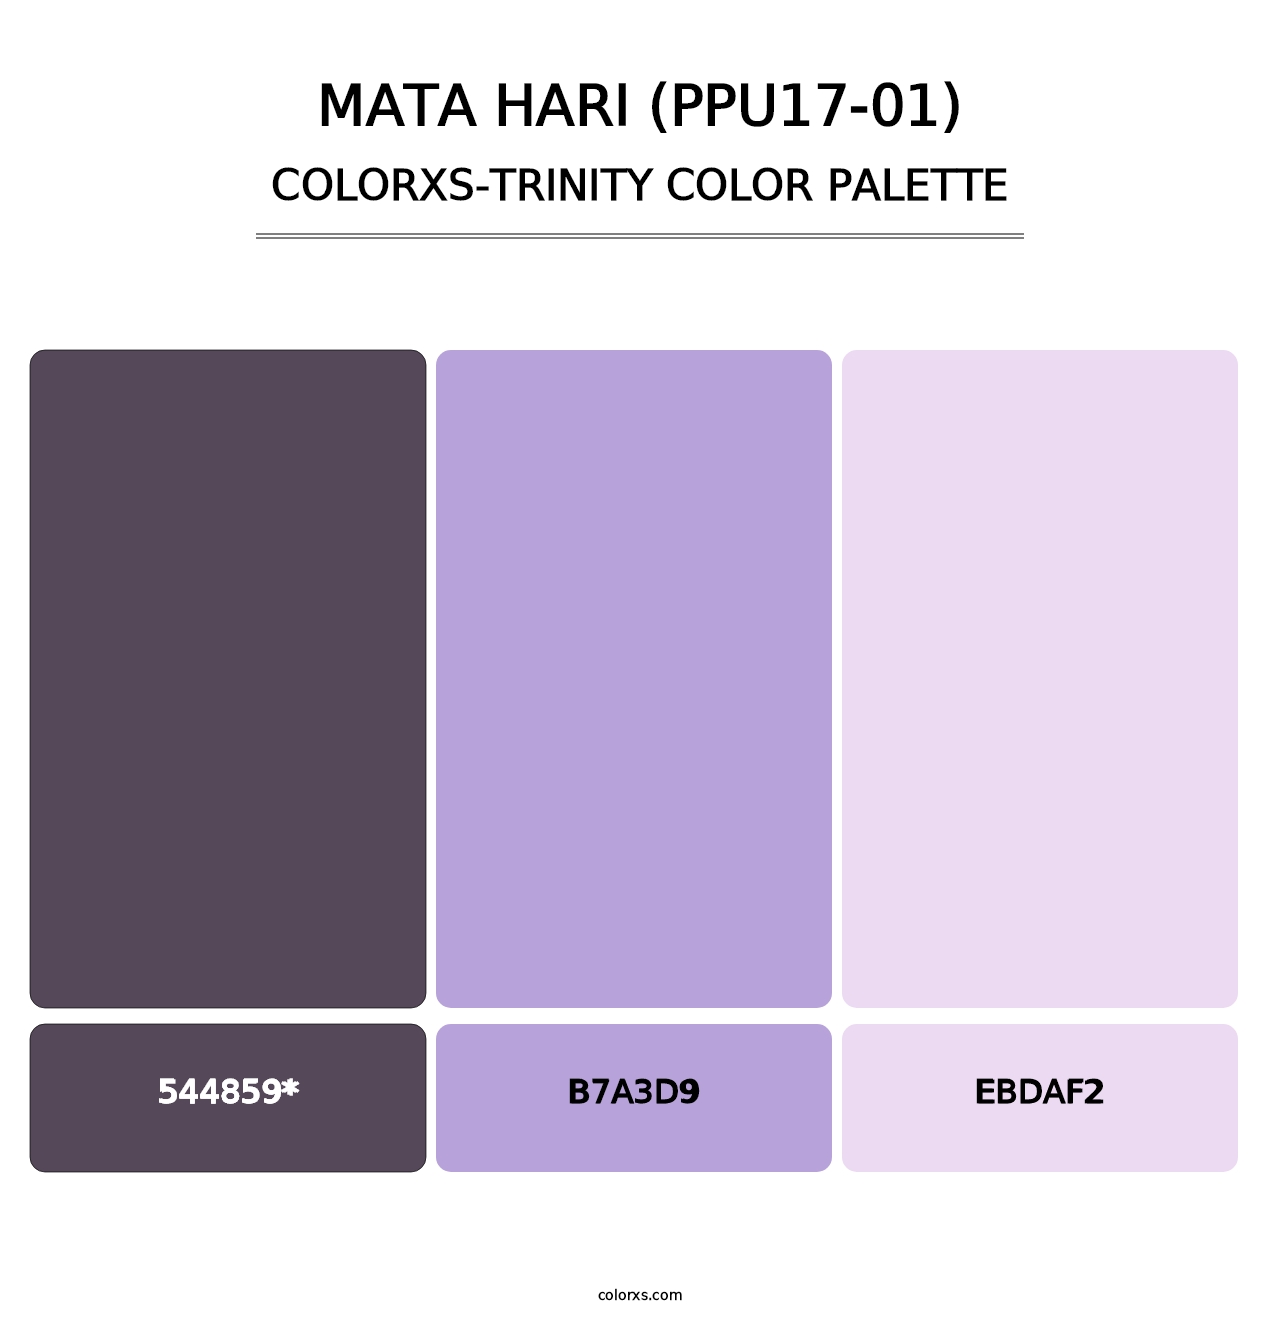 Mata Hari (PPU17-01) - Colorxs Trinity Palette